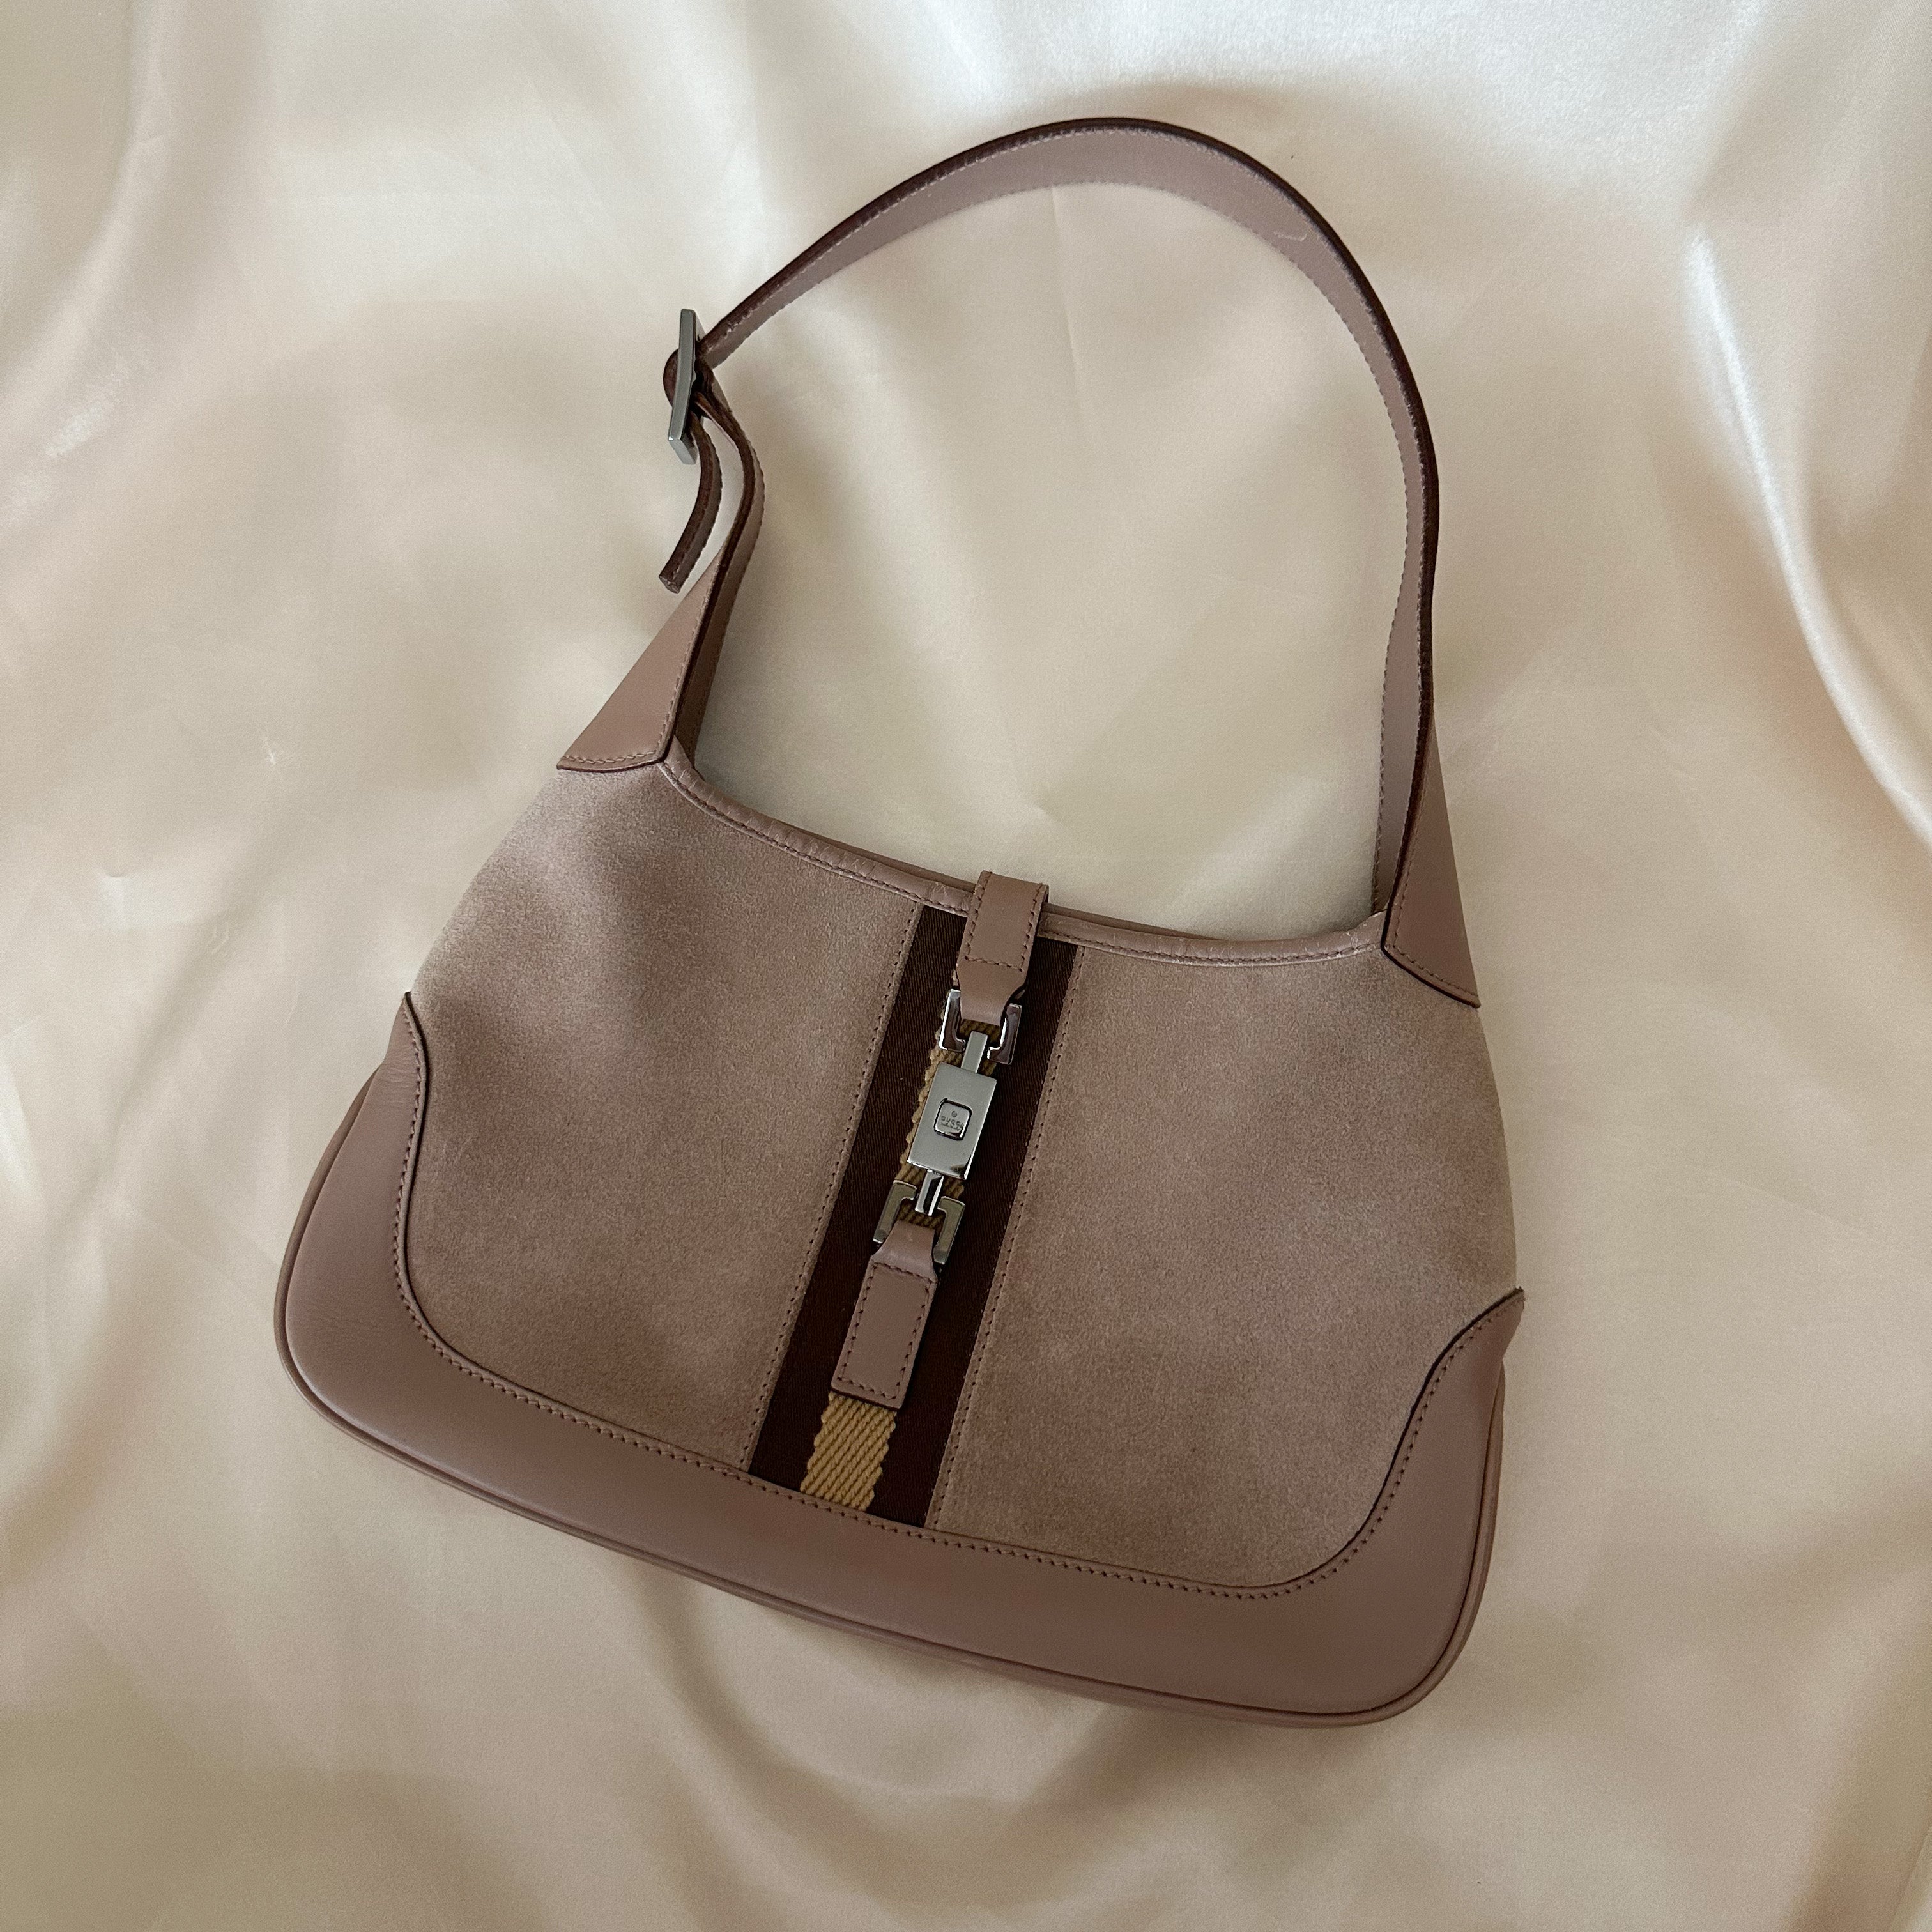 KOOBA Tote Bag Purse Taupe Color 100% Leather | eBay